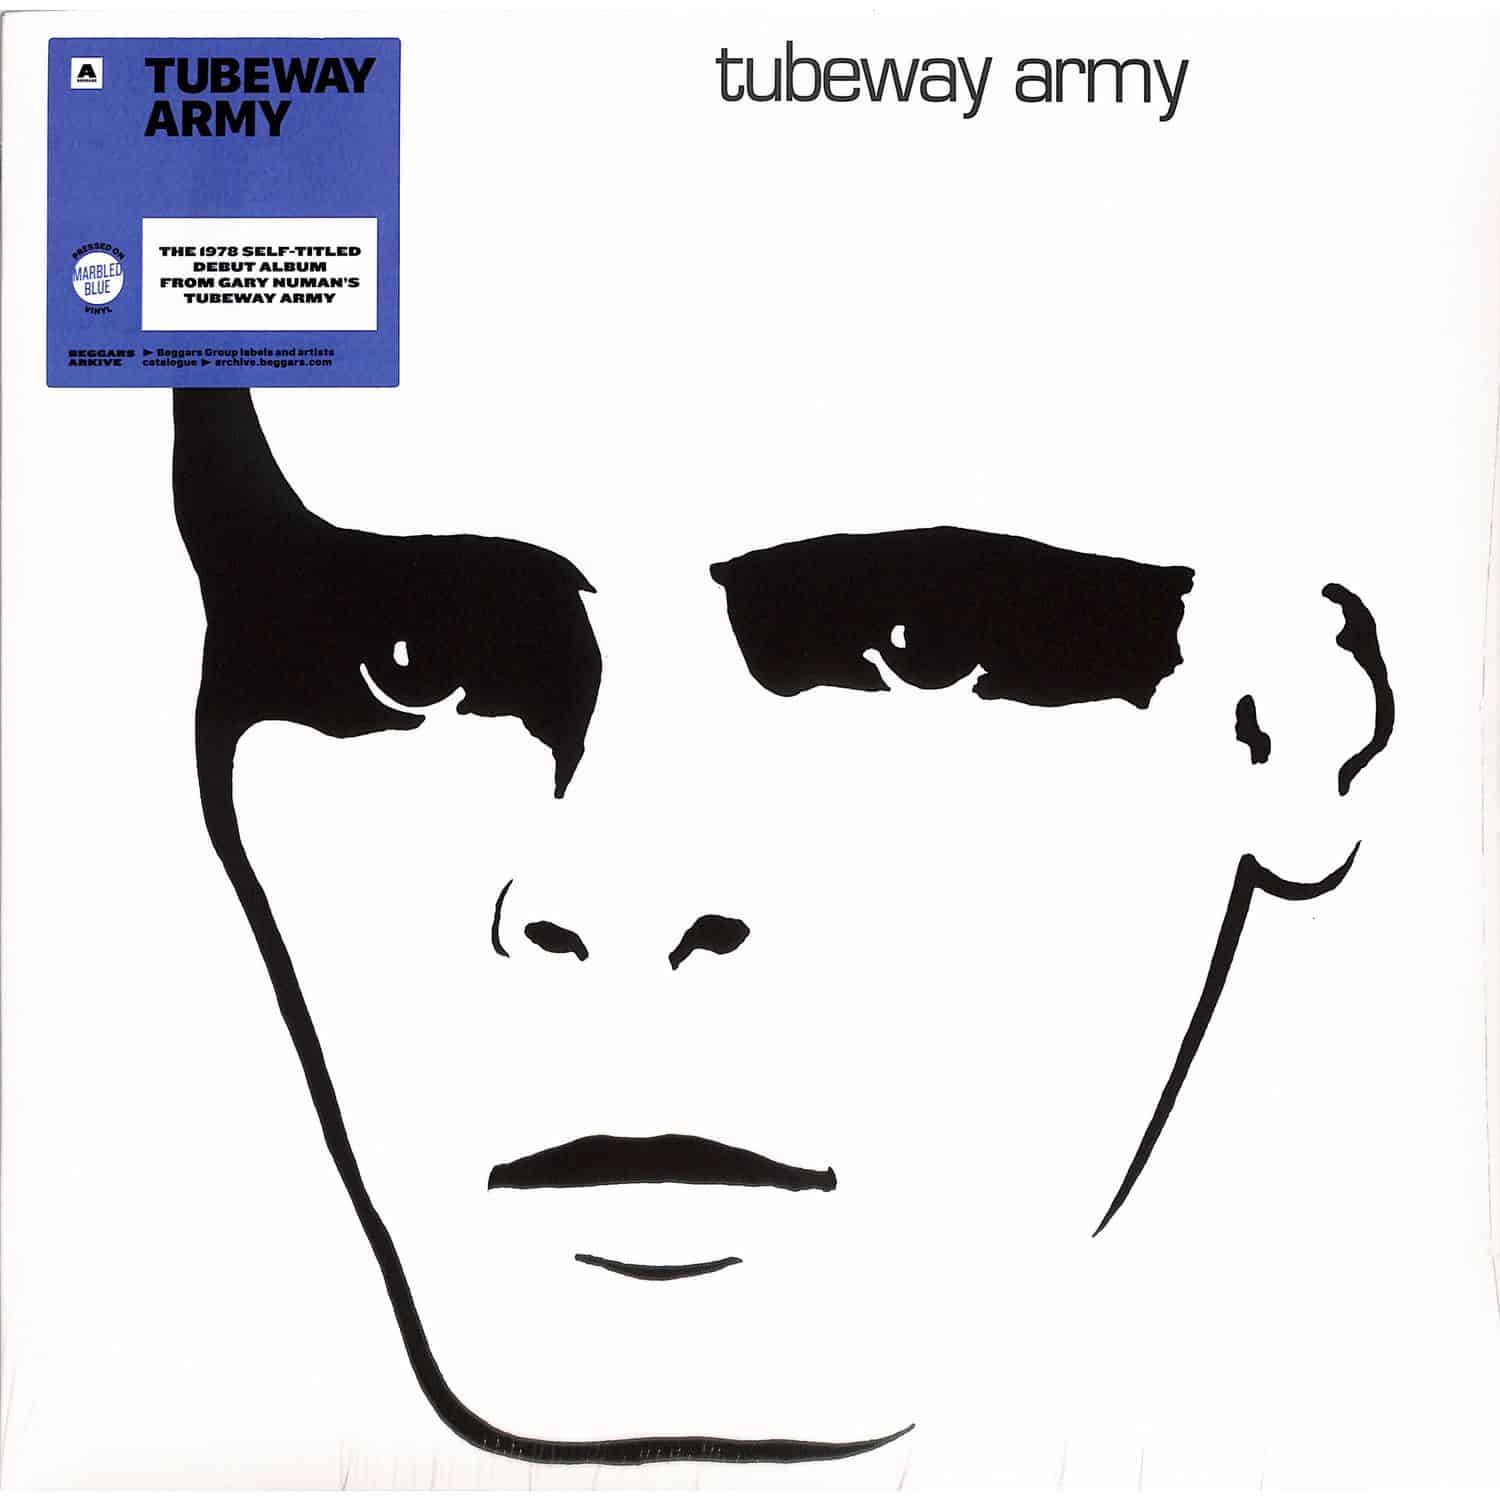 Tubeway Army - TUBEWAY ARMY 